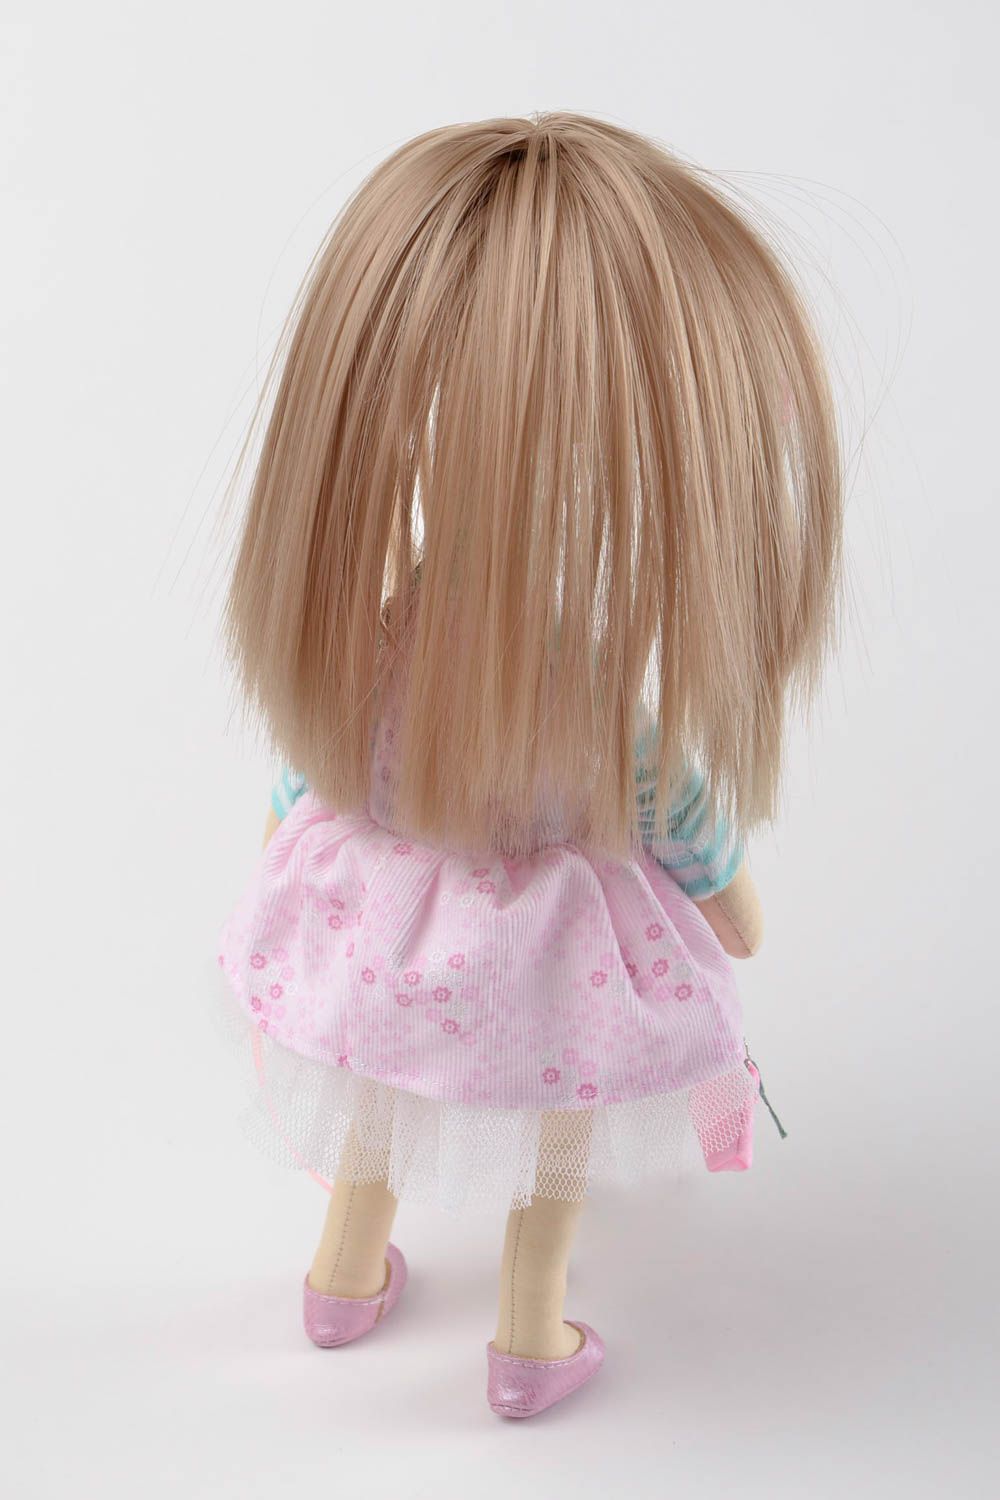 Muñeca artesanal de tejido de algodón para decorar la casa regalo para niñas foto 5